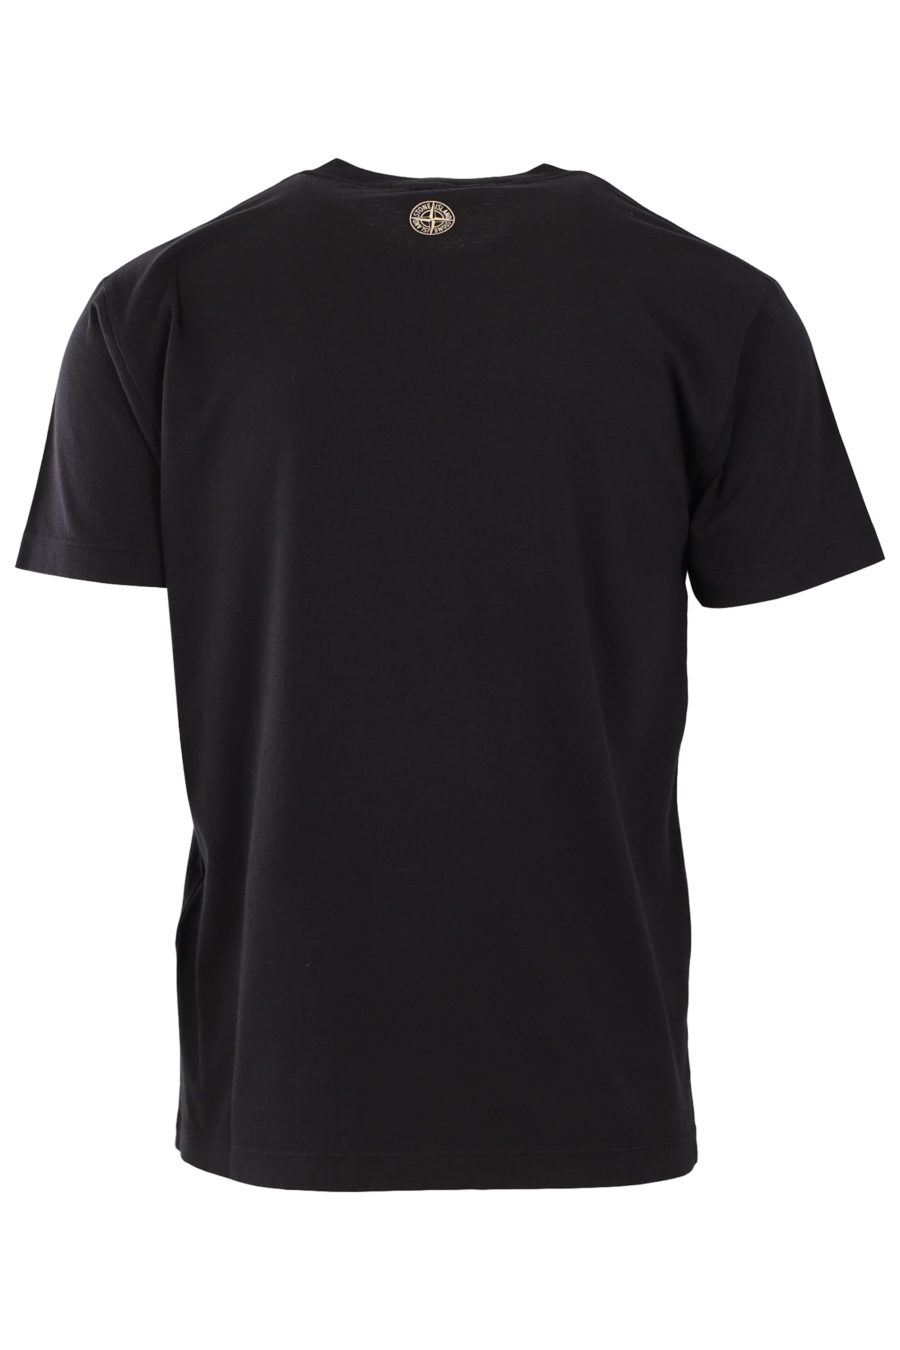 Camiseta de color negro con logo estampado - faab4071e0e1e4d9bf561414167780d8e7d40c8c